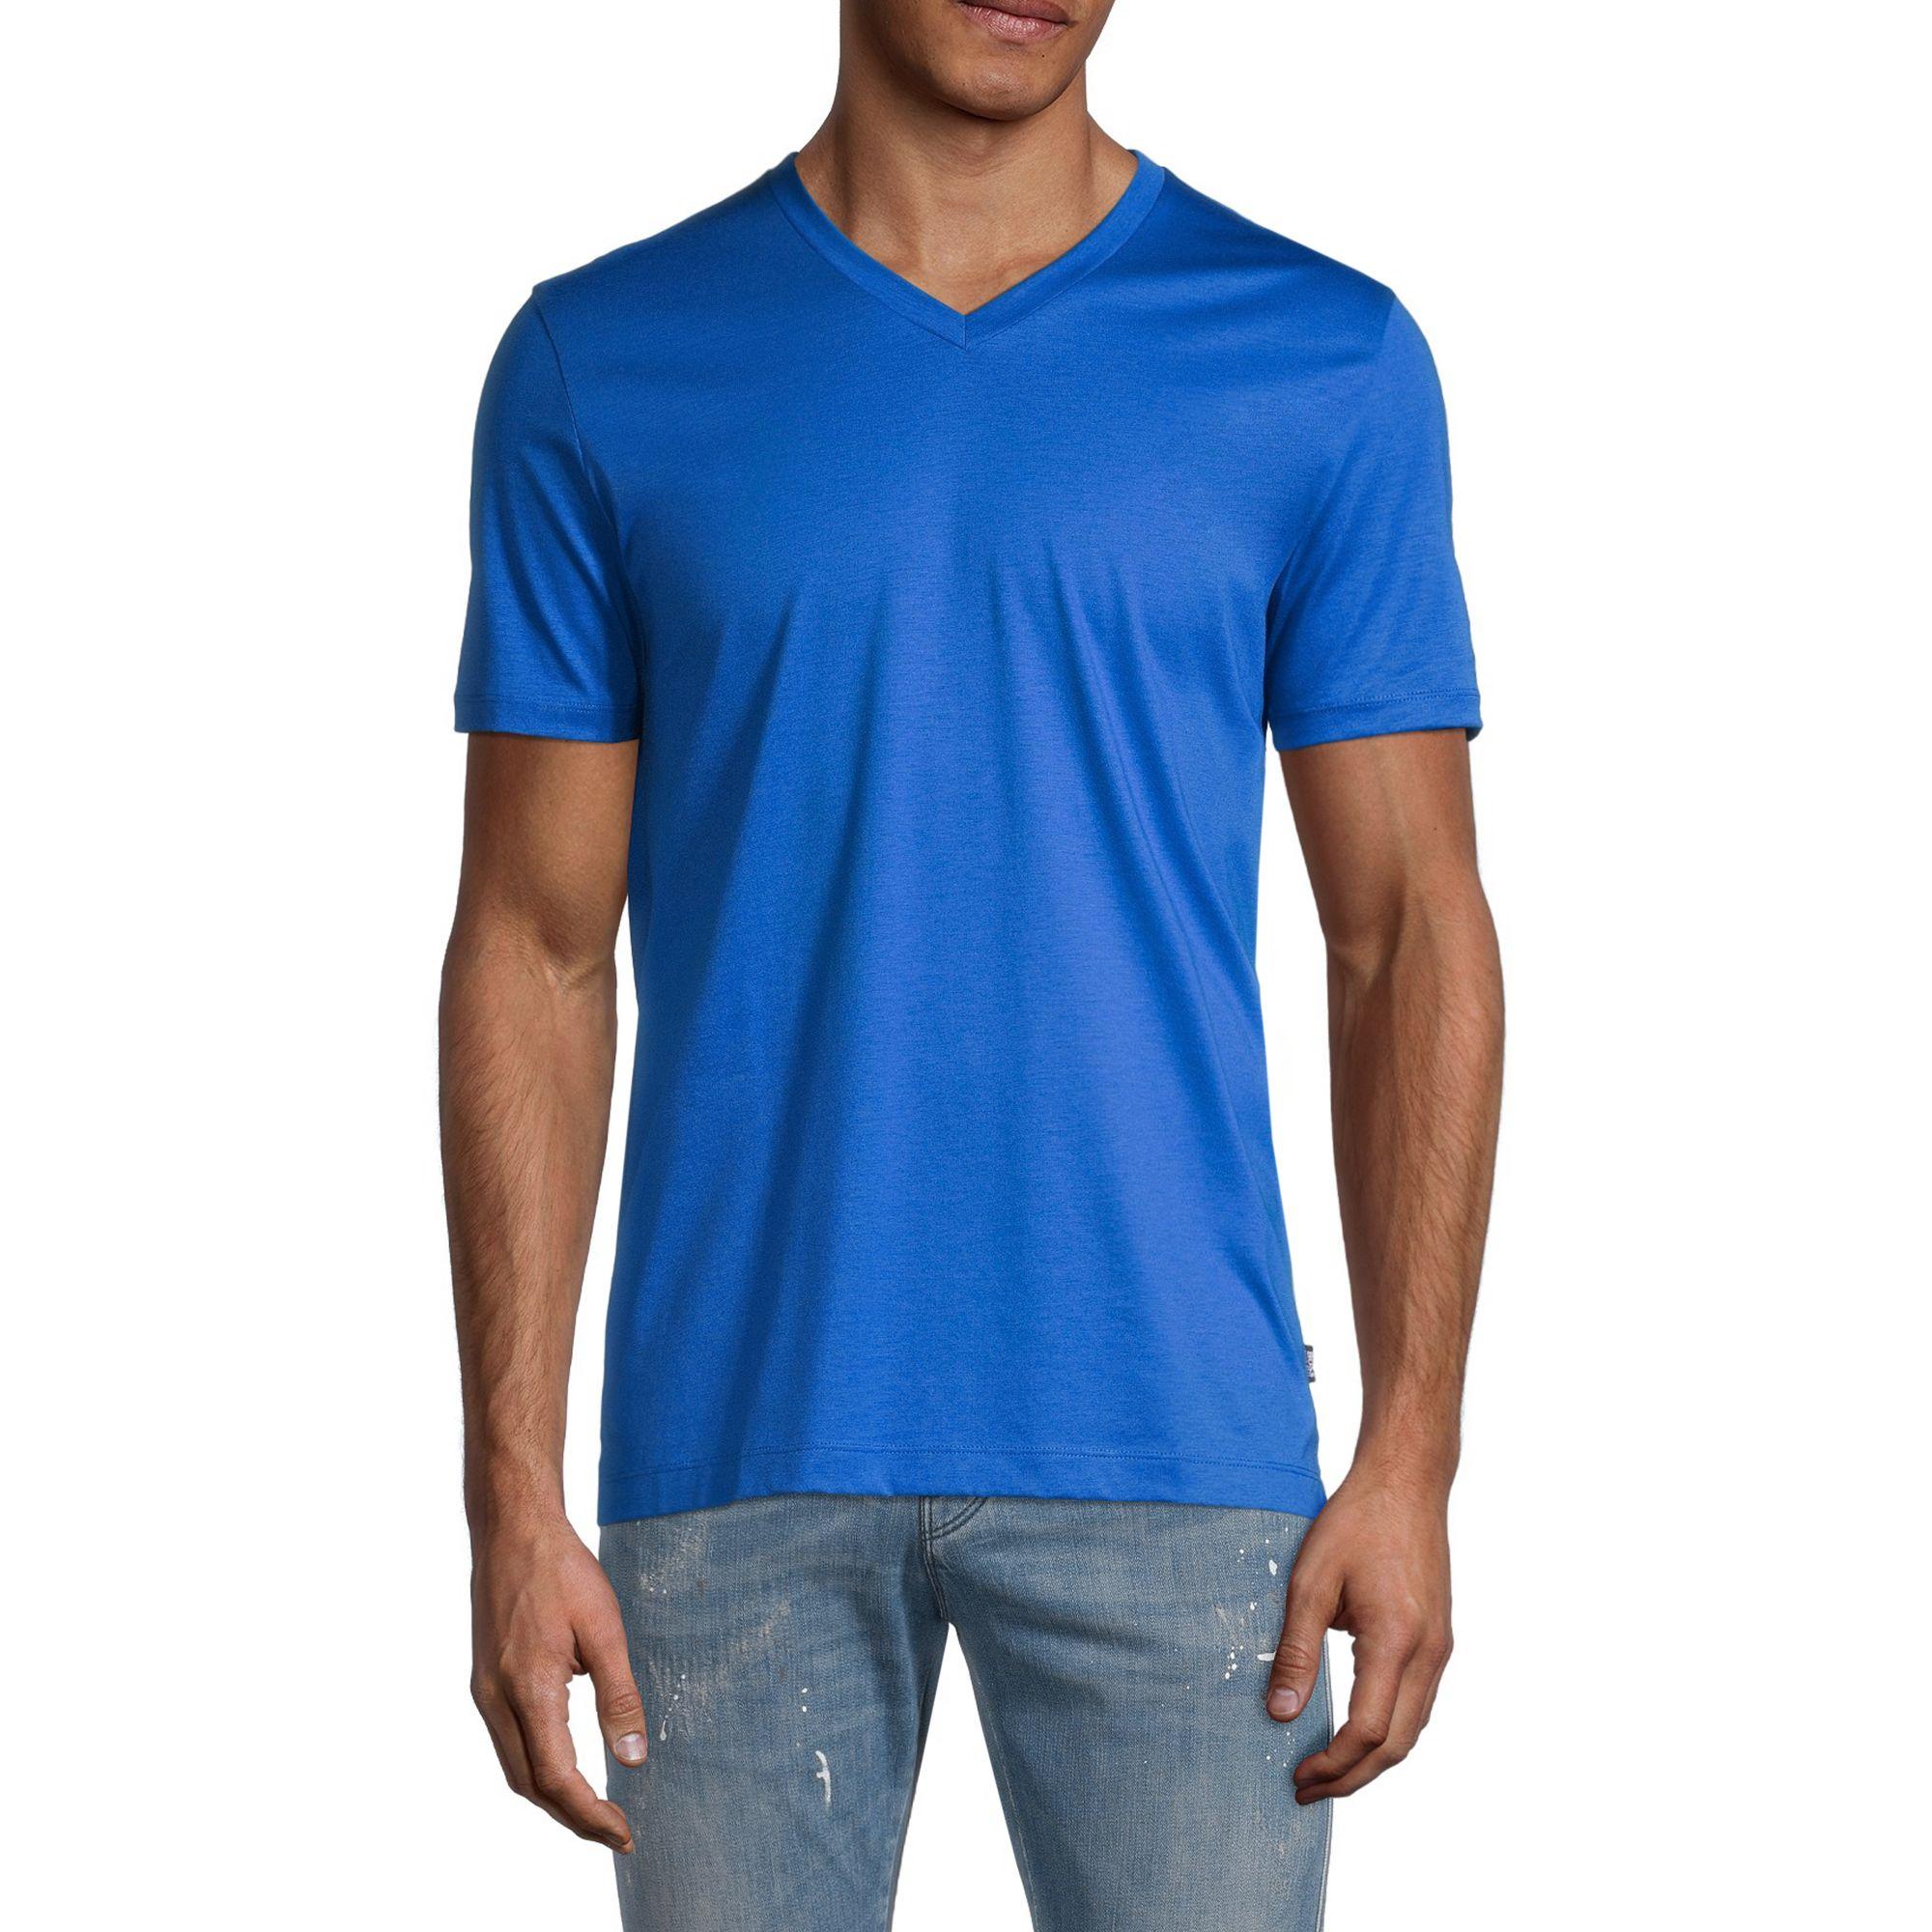 BOSS by Hugo Boss V-neck Cotton T-shirt in Blue for Men - Lyst